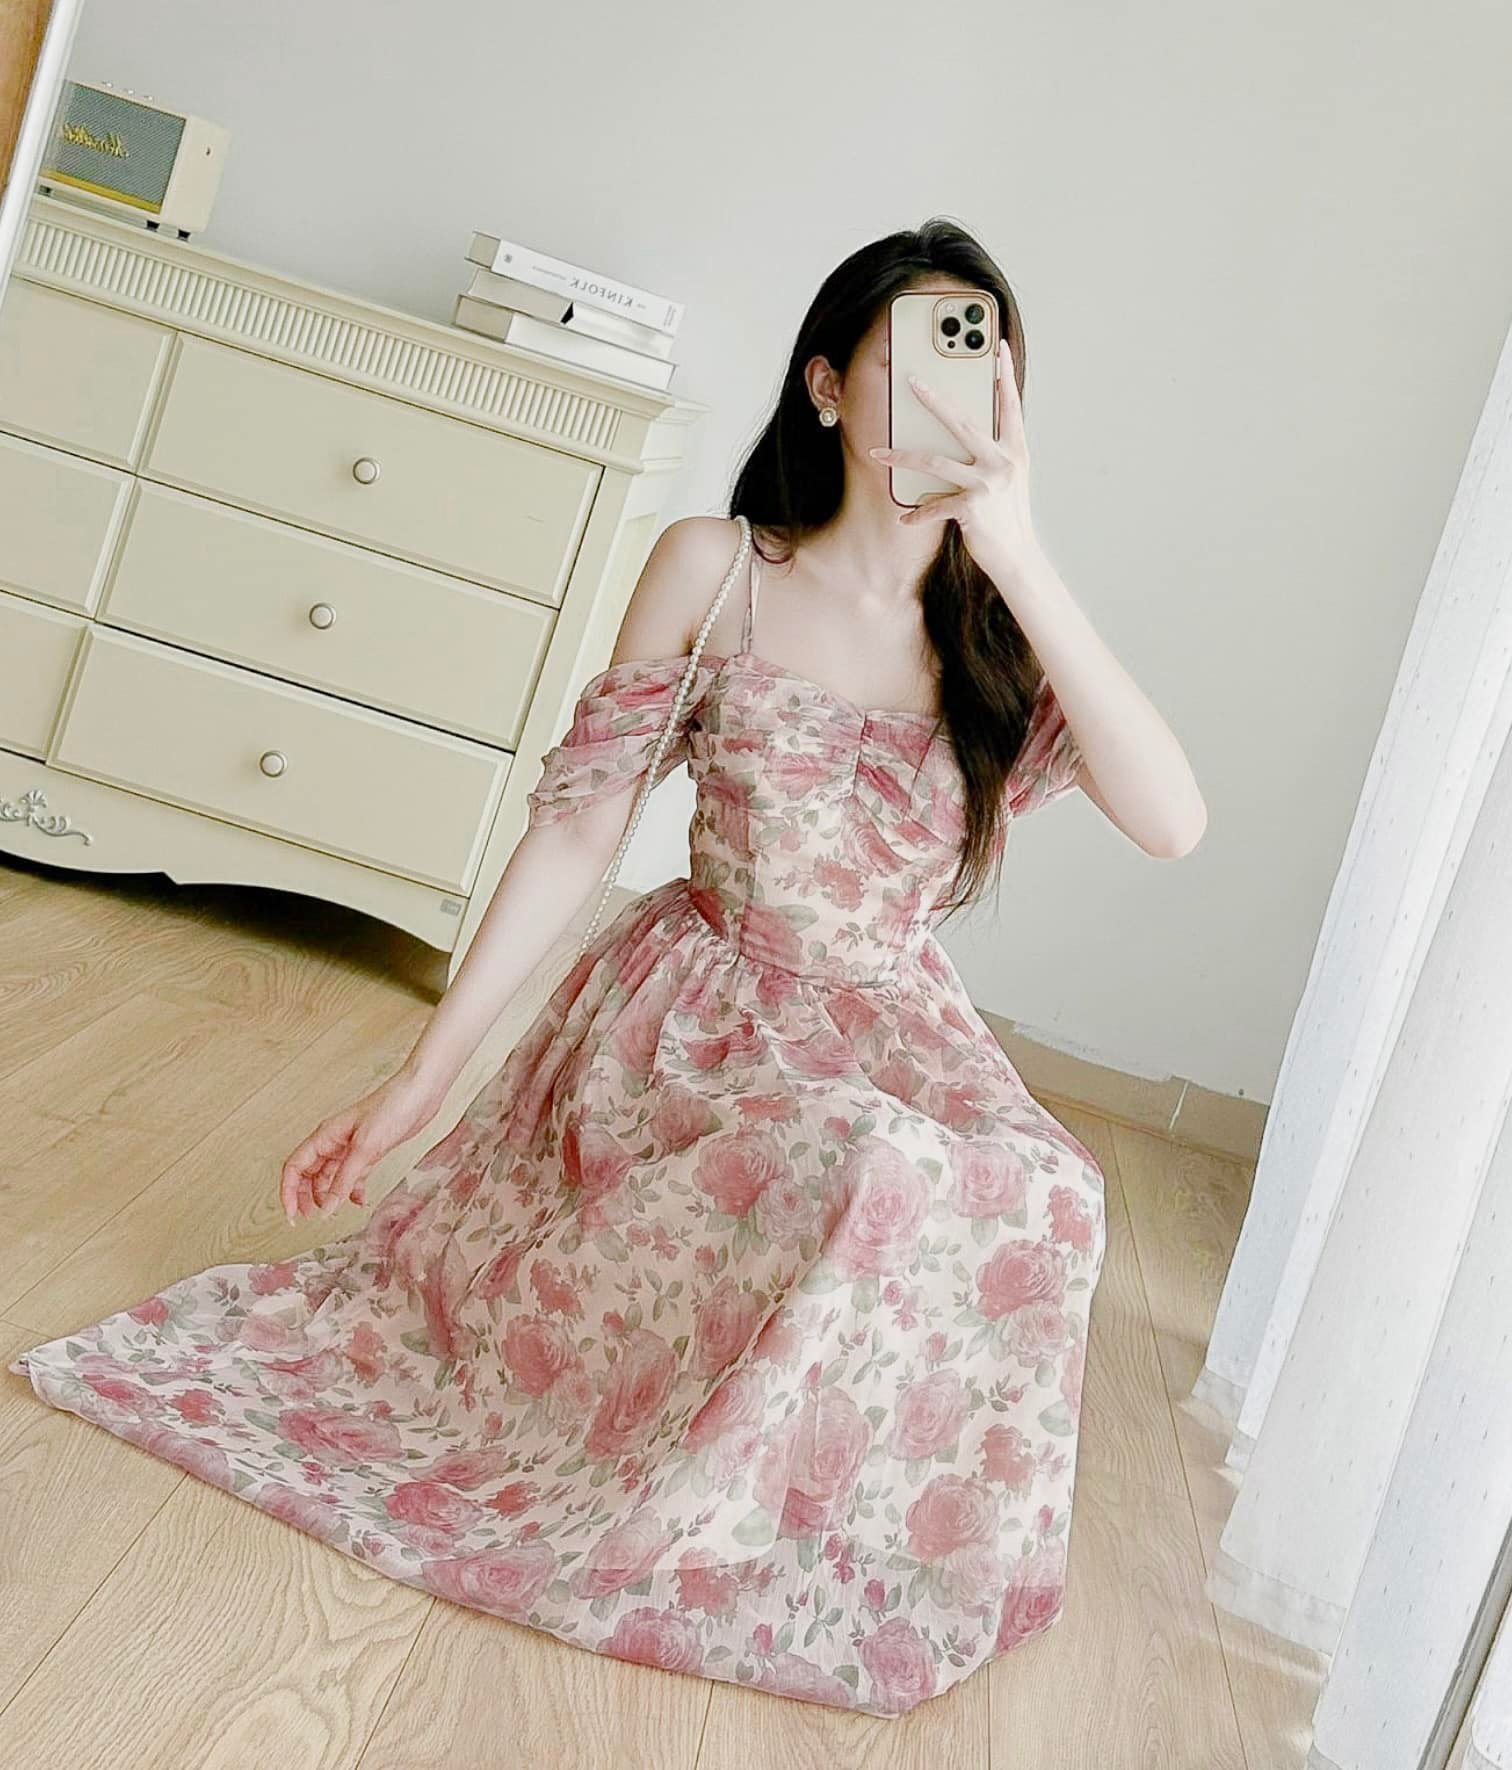 Mới) Mã L0992 Giá 1490K: Váy Đầm Liền Thân Nữ Nitdel Hàng Mùa Hè Trung Niên  Họa Tiết Hoa Thời Trang Nữ Chất Liệu Vải Voan G04 Sản Phẩm Mới, (Miễn Phí